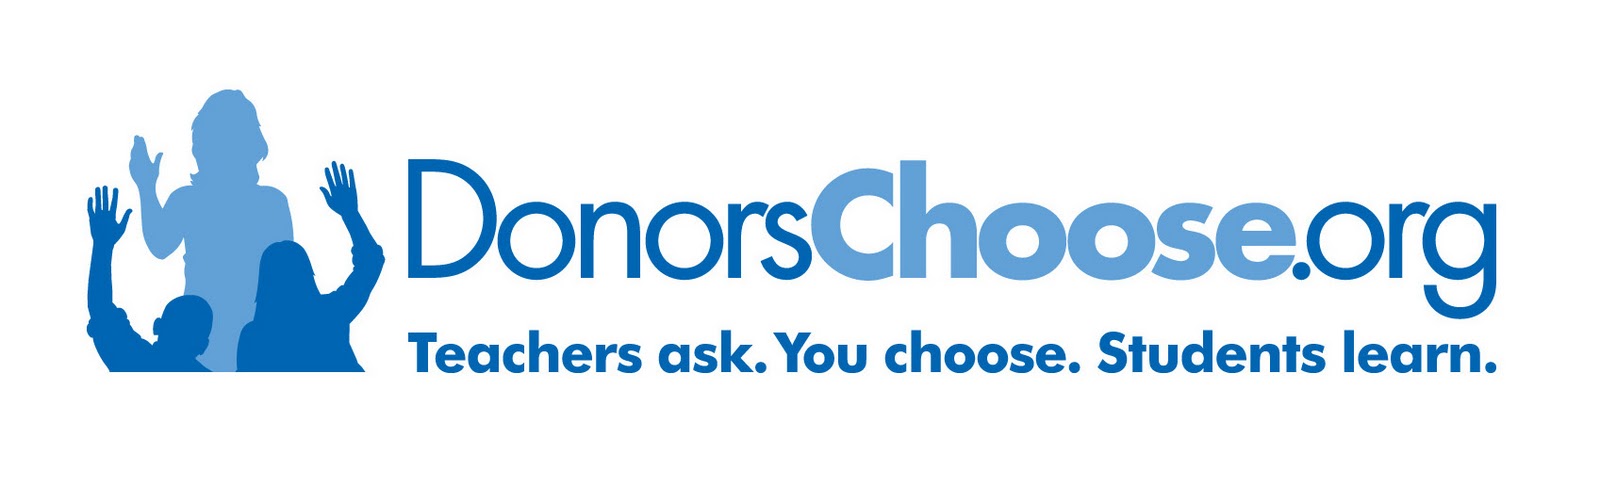 DonorsChoose_org_logo.jpeg